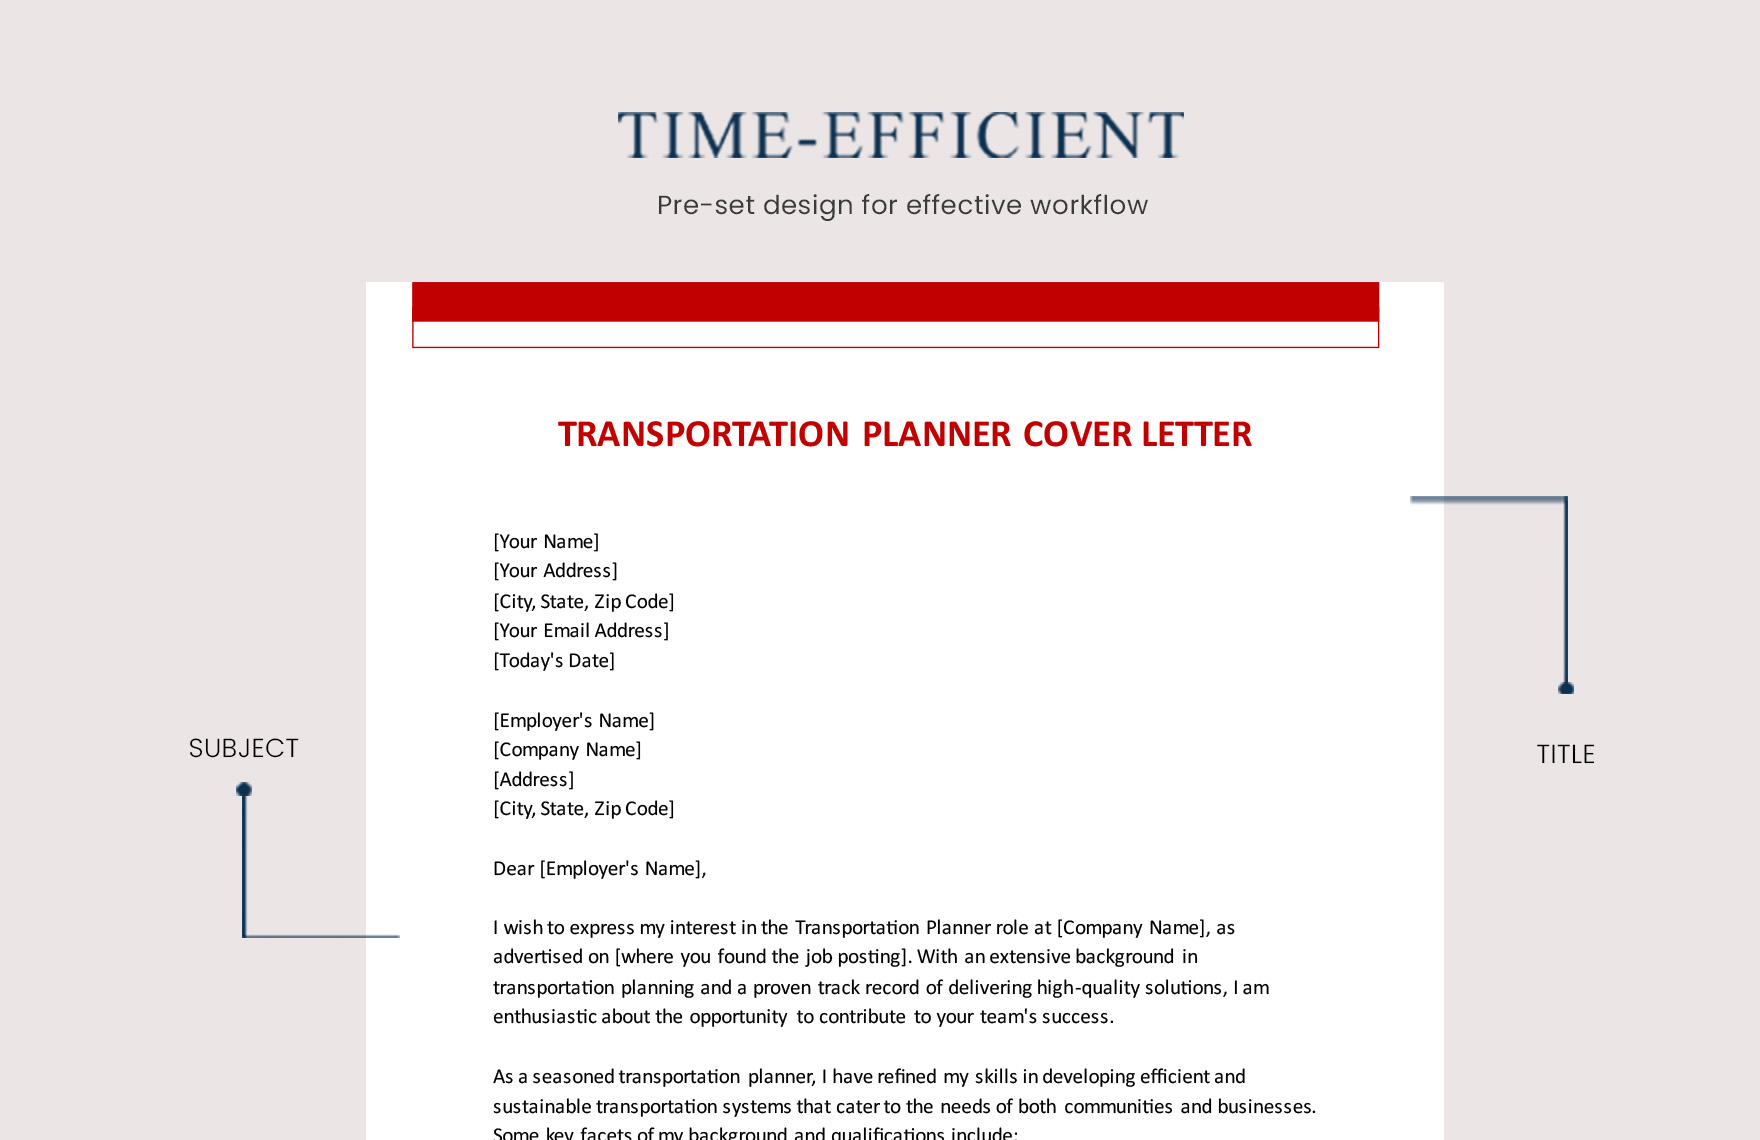 Transportation Planner Cover Letter